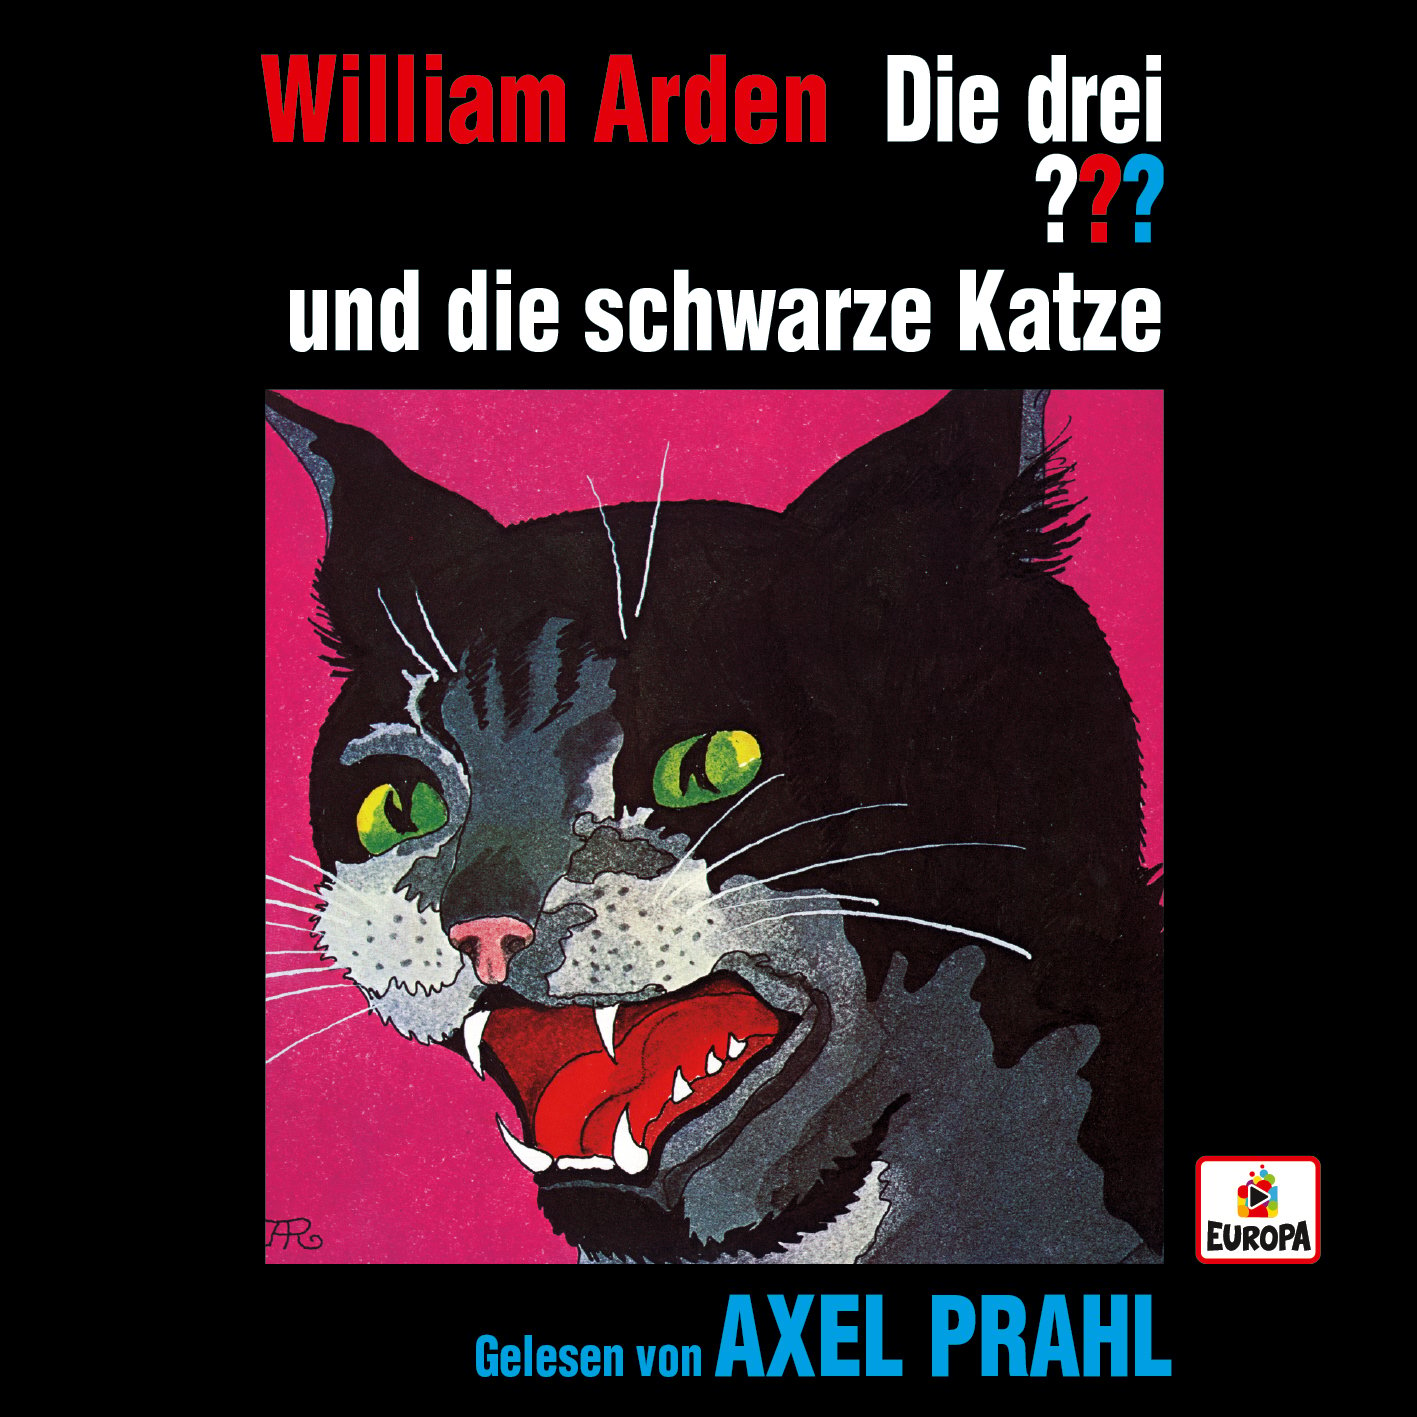 Die drei ???: Die drei ??? x Axel Prahl liest... und die schwarze Katze